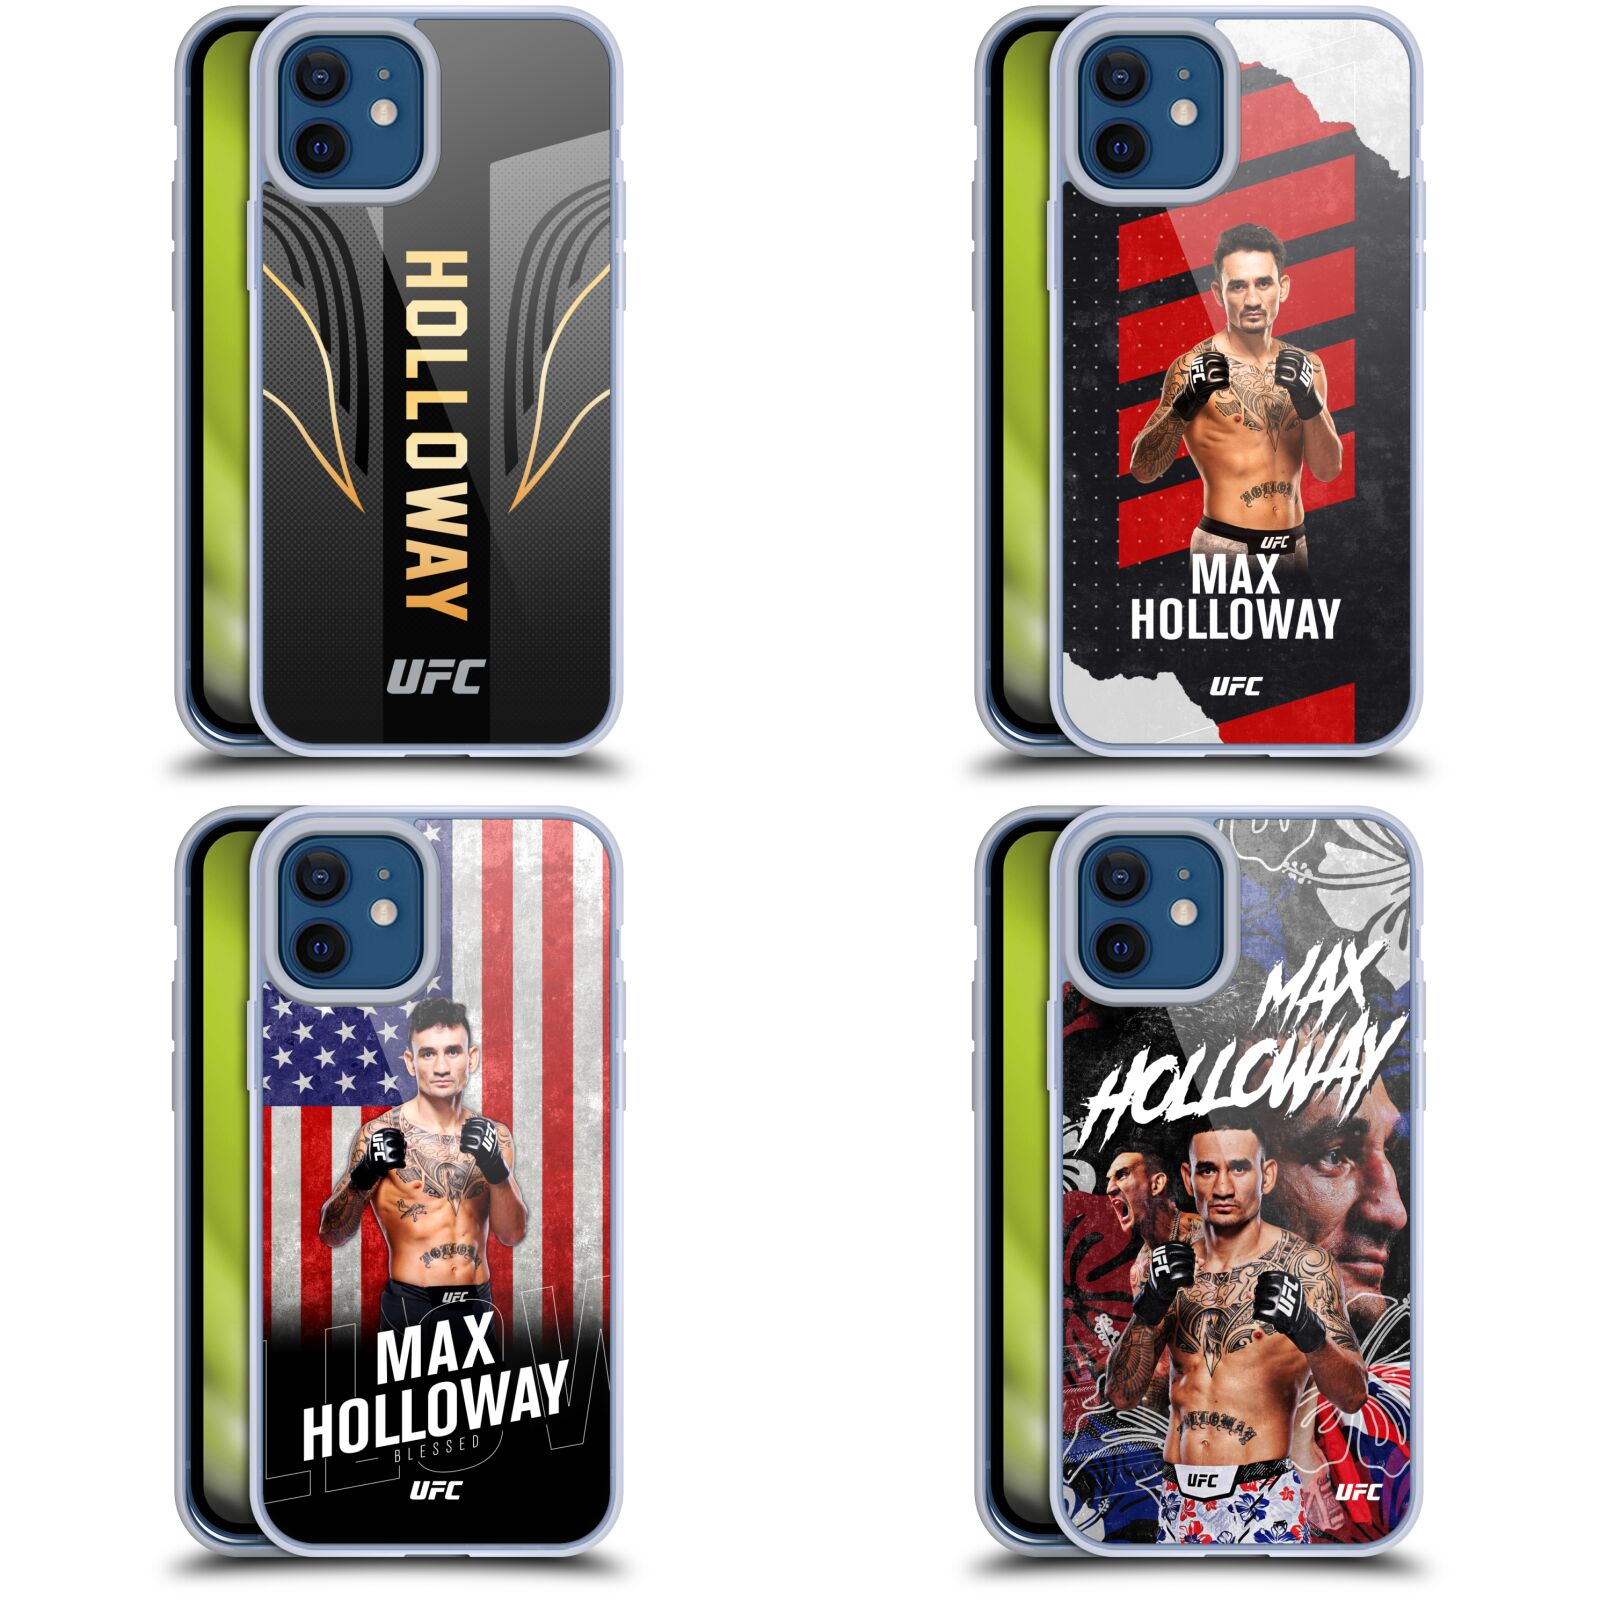 公式ライセンス UFC マックス・ホロウェイ ソフトジェルケース Apple iPhone 電話 MMA 格闘技 ボクシング キックボクシング 空手 アメリカ スマホケース 全機種対応 グッズ ワイヤレス充電 対応